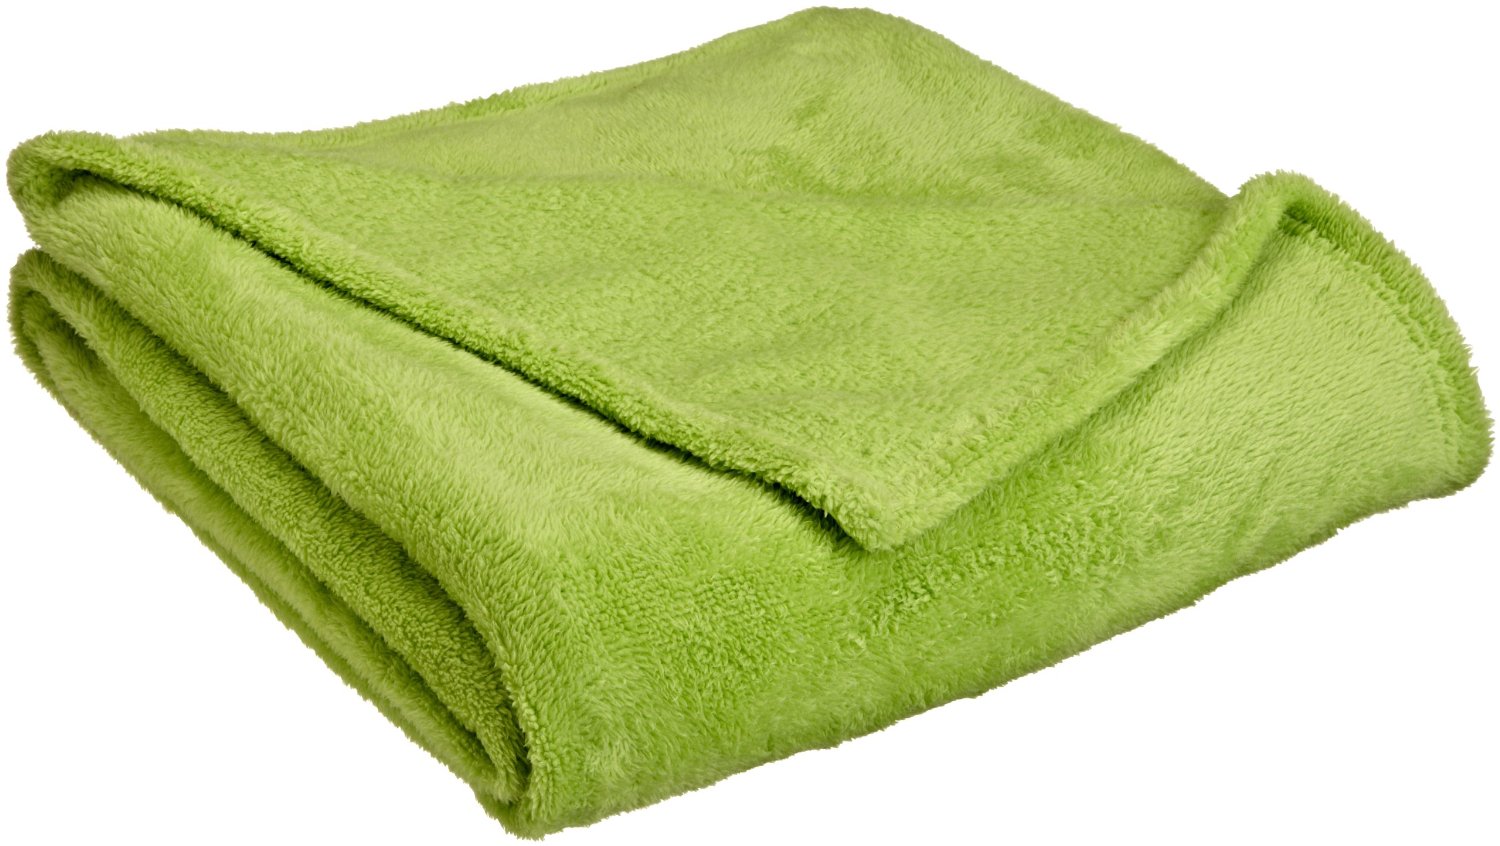 Vellux Cotton Blanket